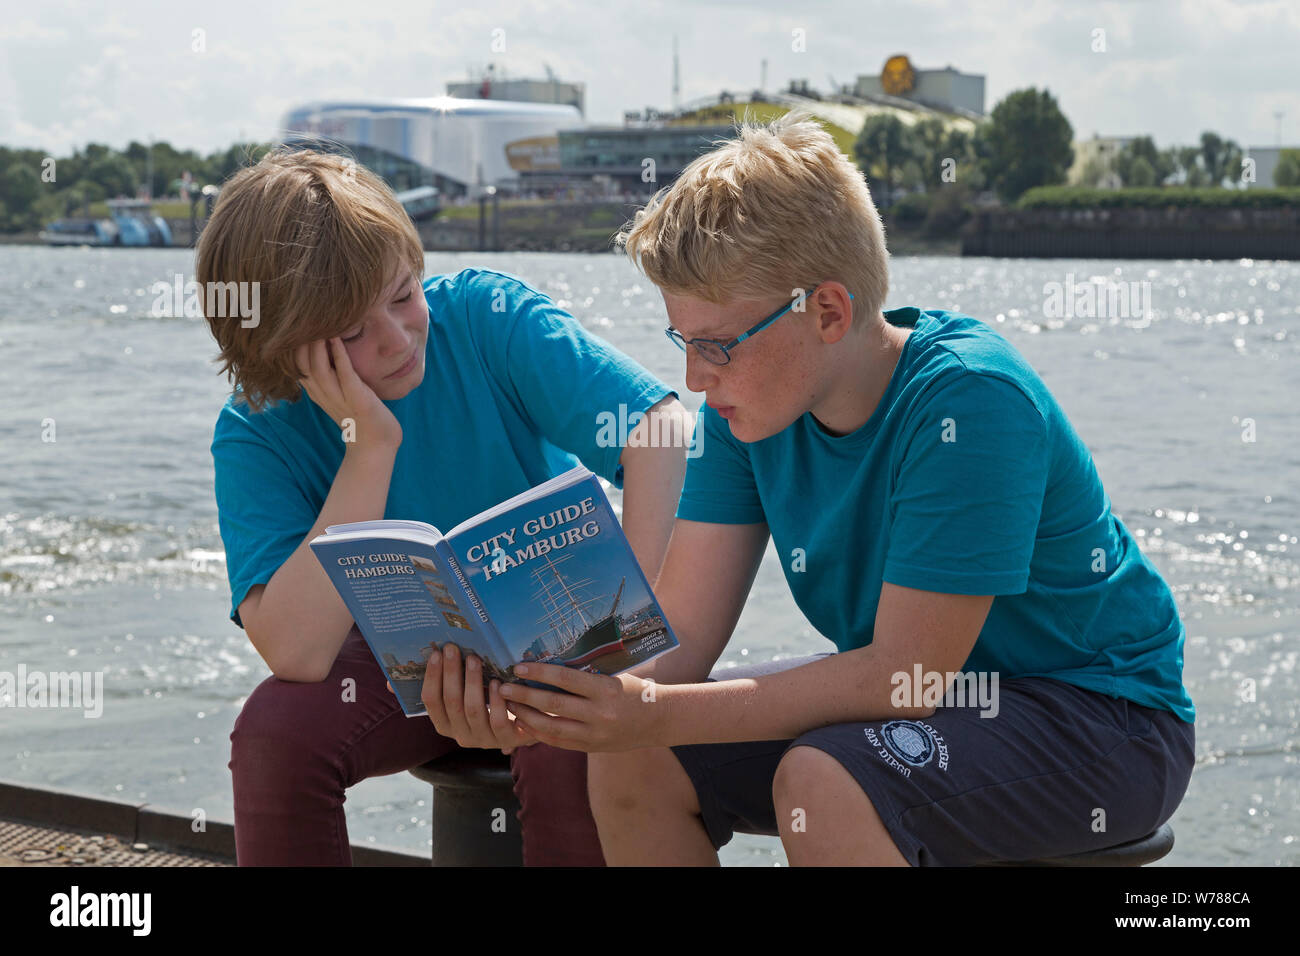 Gli adolescenti durante lo studio della lingua corsa nello studio della loro guida della città accanto al fiume Elba, Amburgo, Germania Foto Stock